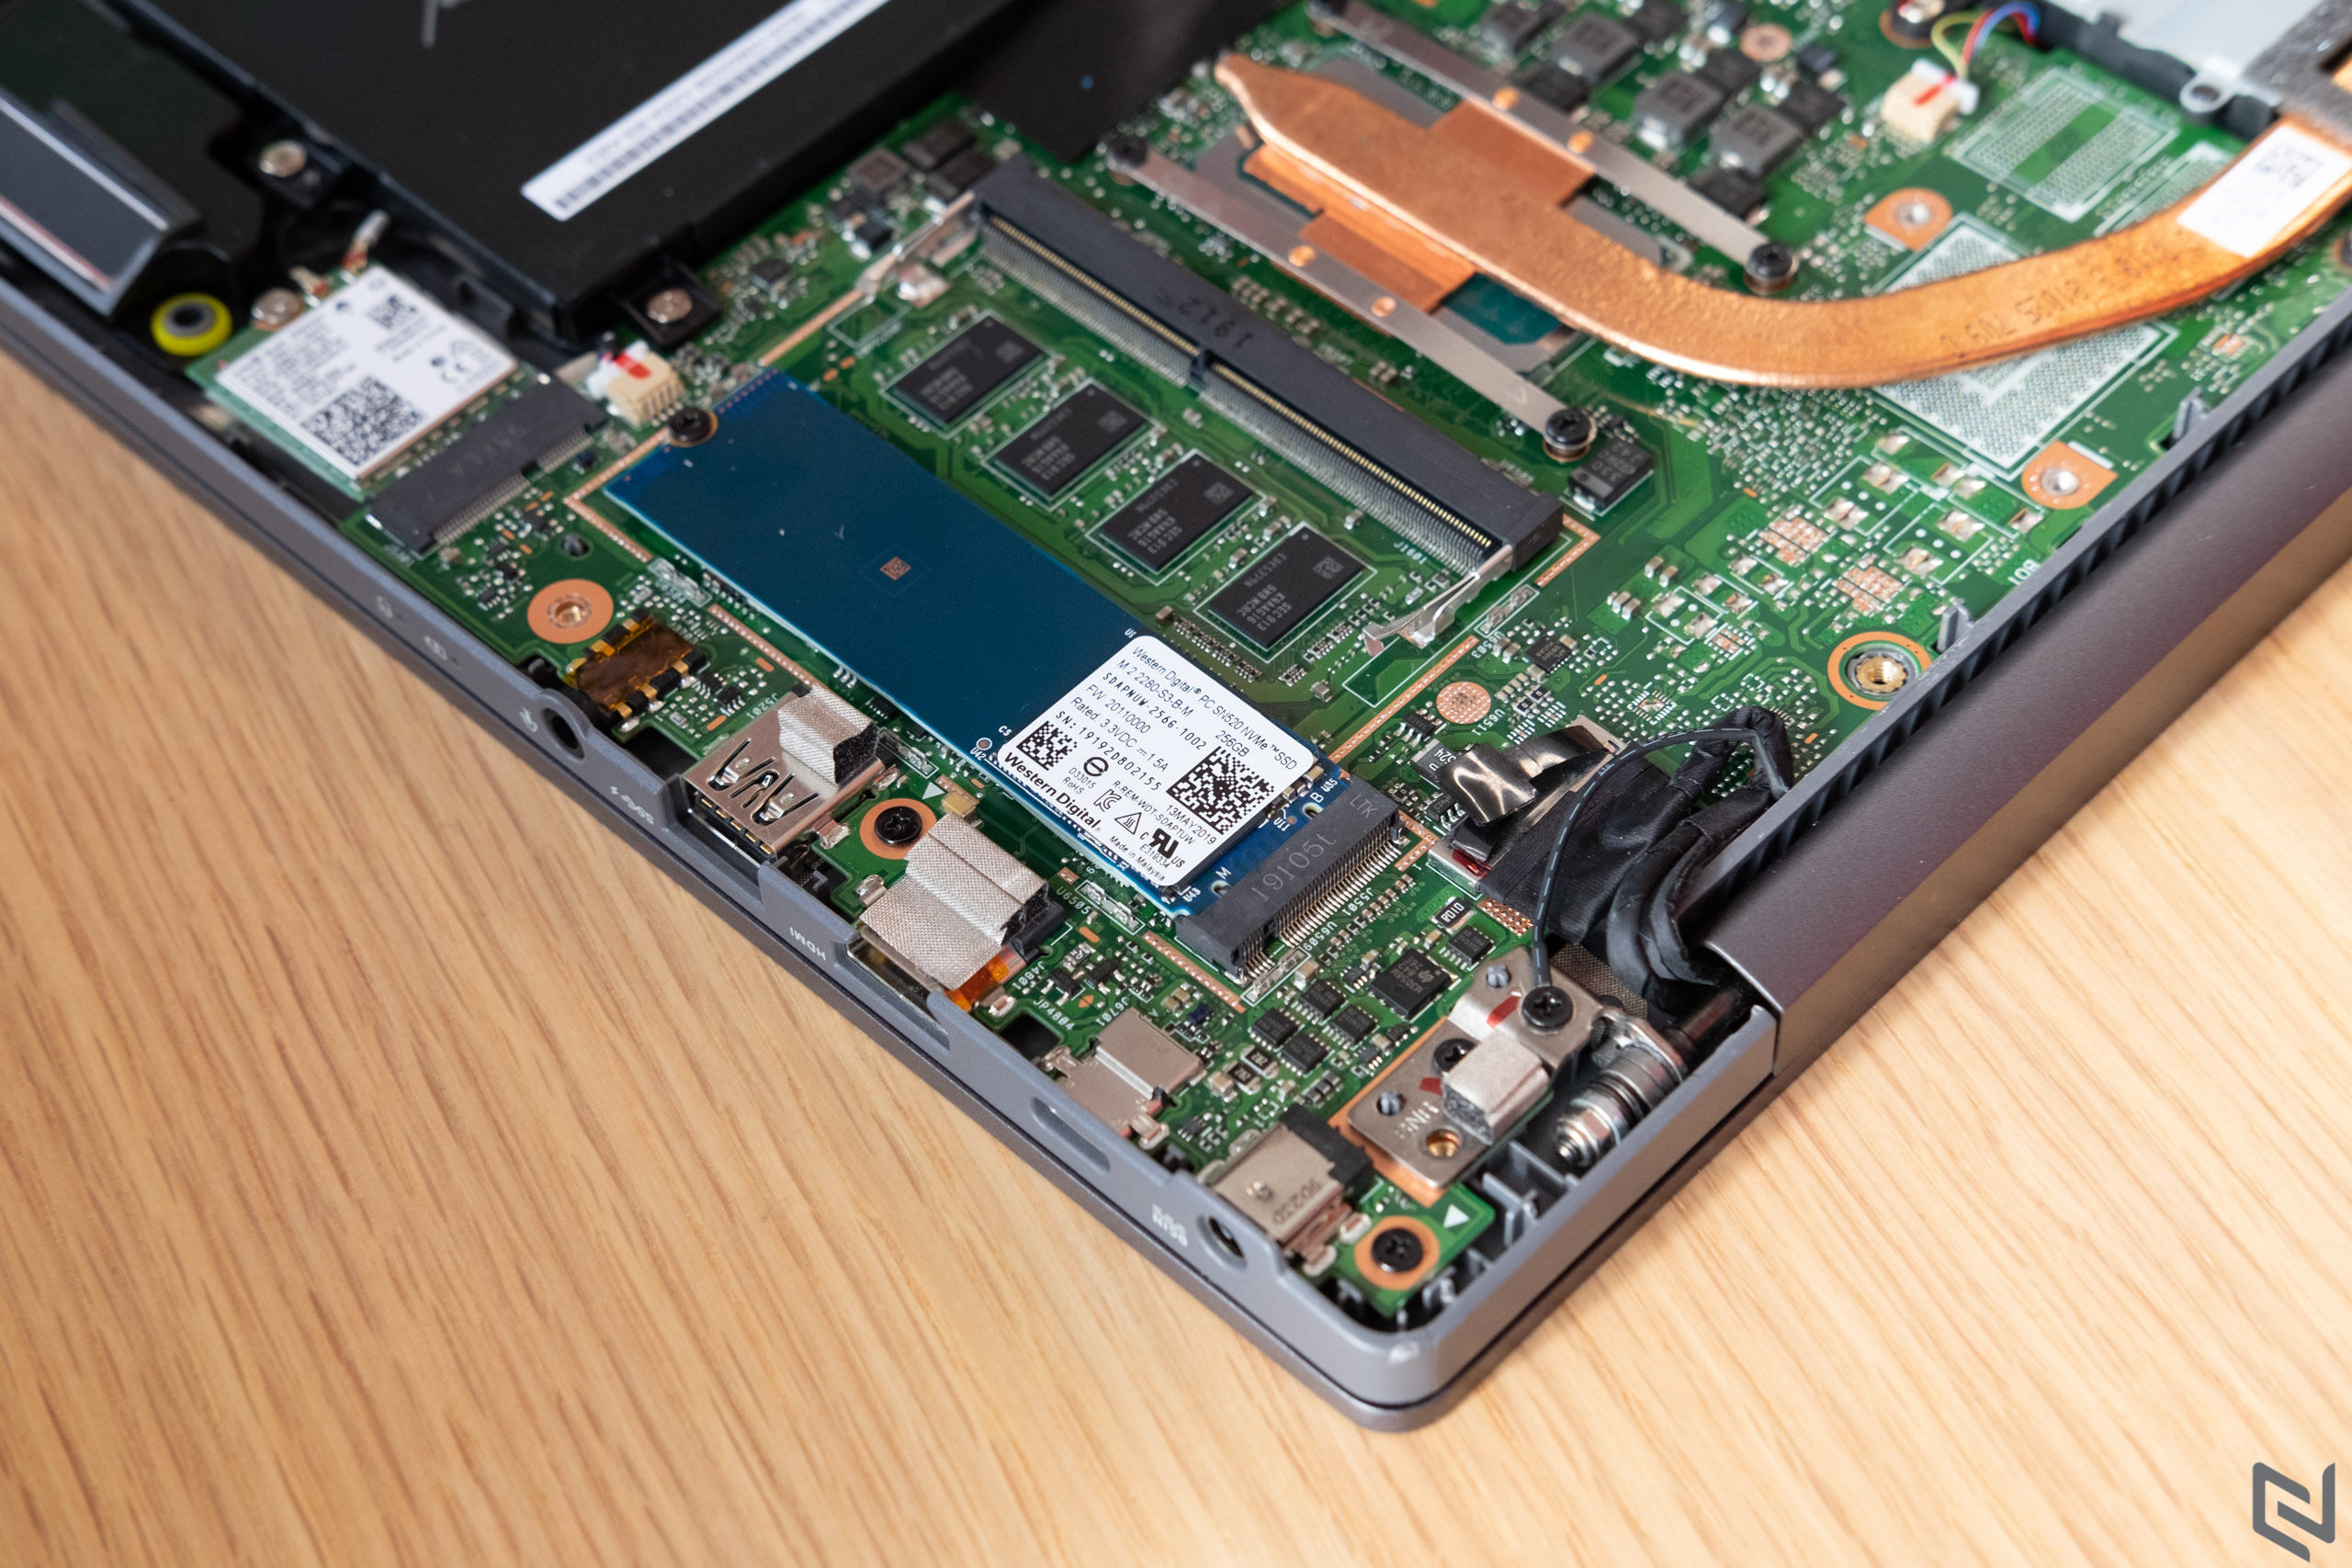 Đánh giá laptop ASUS ExpertBook P5440F: Độ bền đạt chuẩn quân đội nhưng vẫn gọn nhẹ và bảo mật dữ liệu cực cao